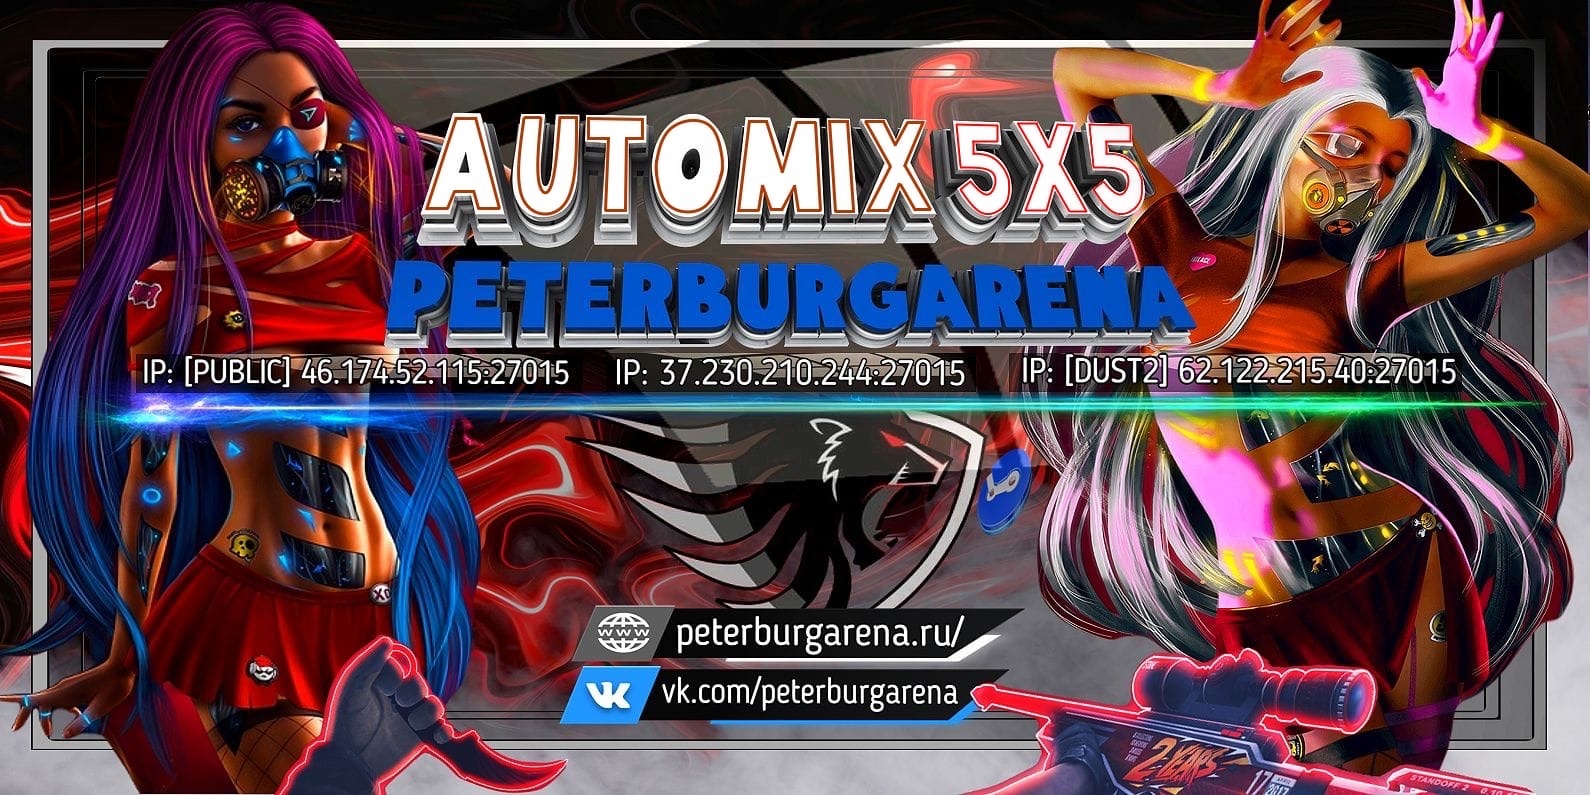 AUTOMIX 5x5 PETERBURGARENA